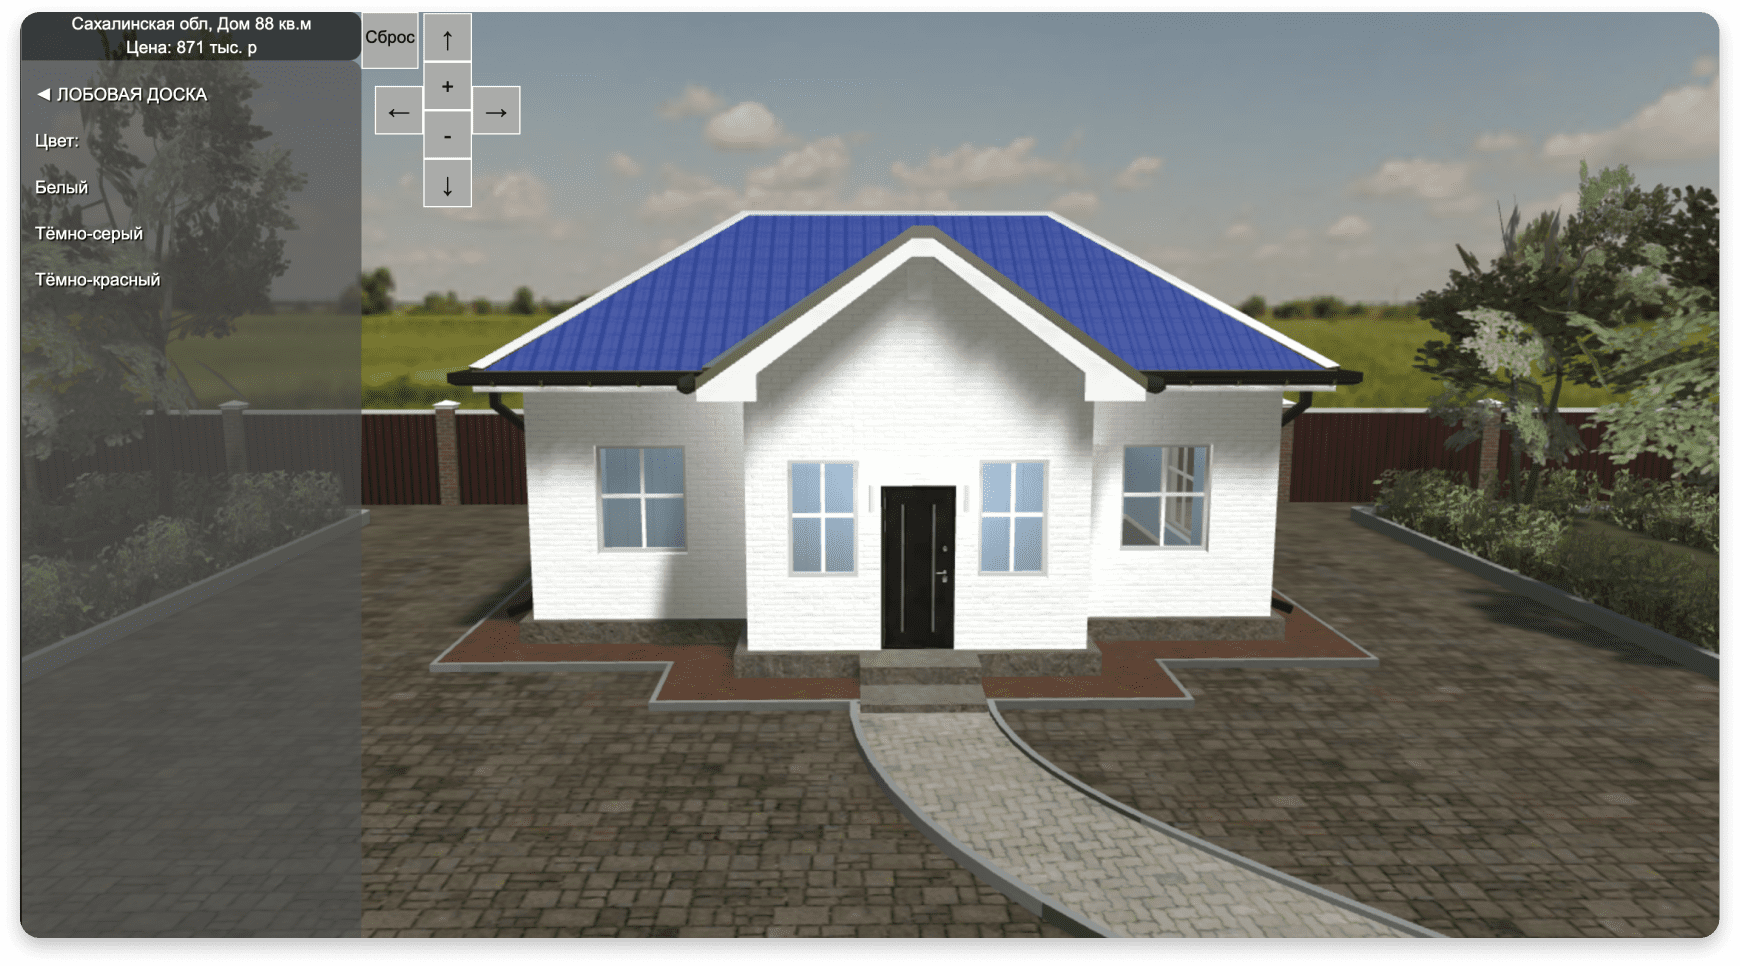 Дизайн конфигуратора - 3D конфигуратор домов для загородной недвижимости - 4